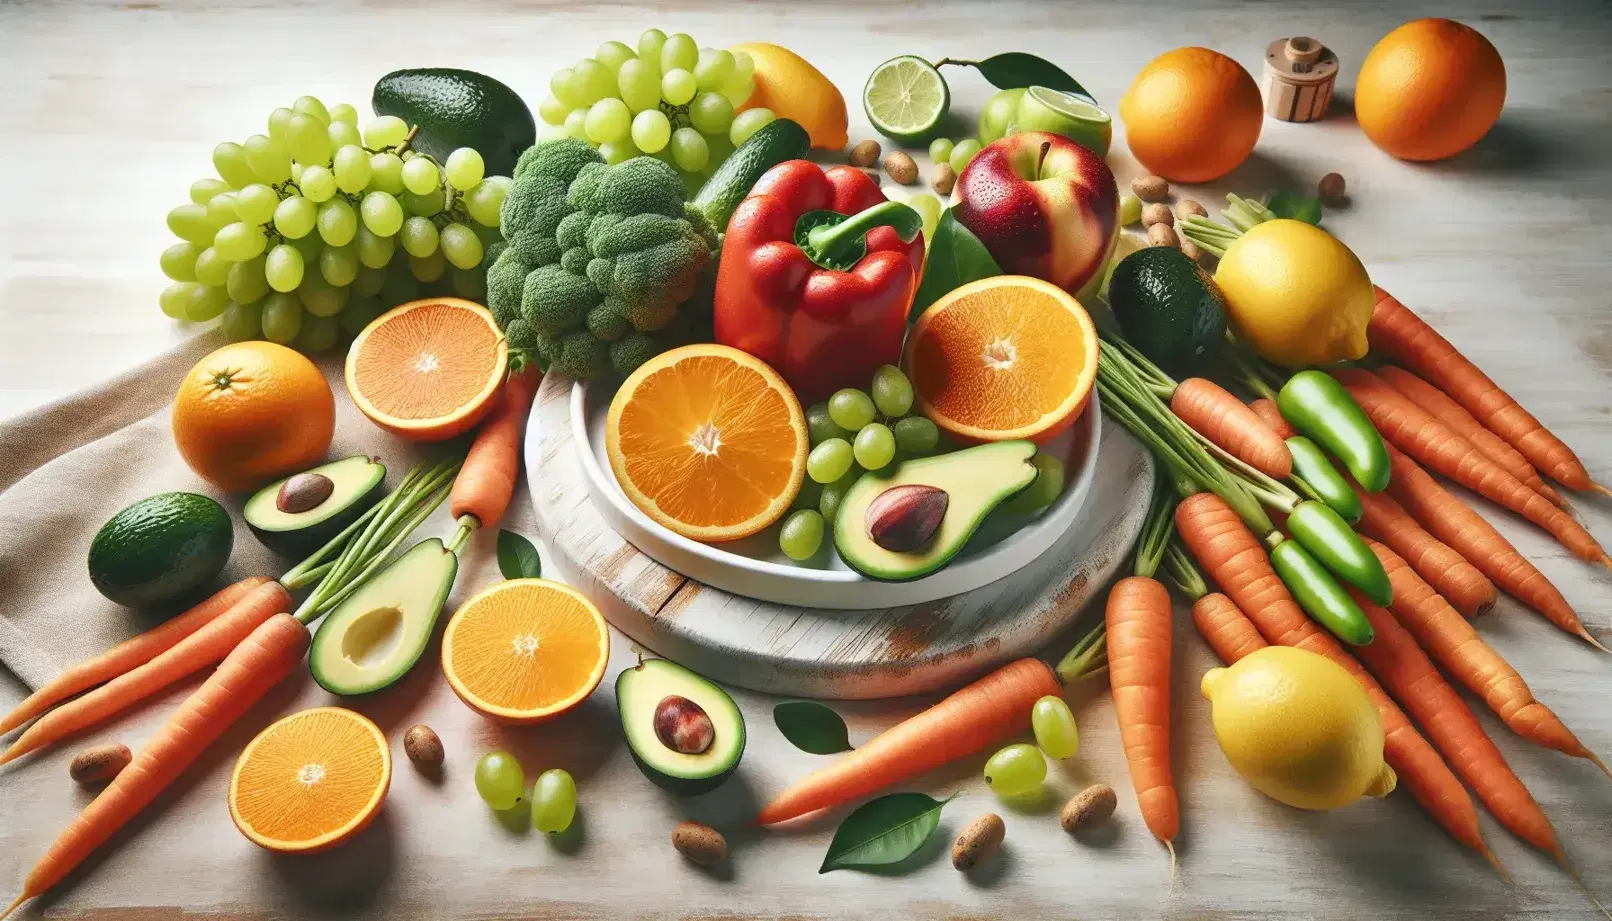 Variedad de frutas y verduras frescas sobre superficie de madera clara, con plato de naranja en el centro, uvas verdes, zanahorias, pimiento rojo, aguacate y limón amarillo.